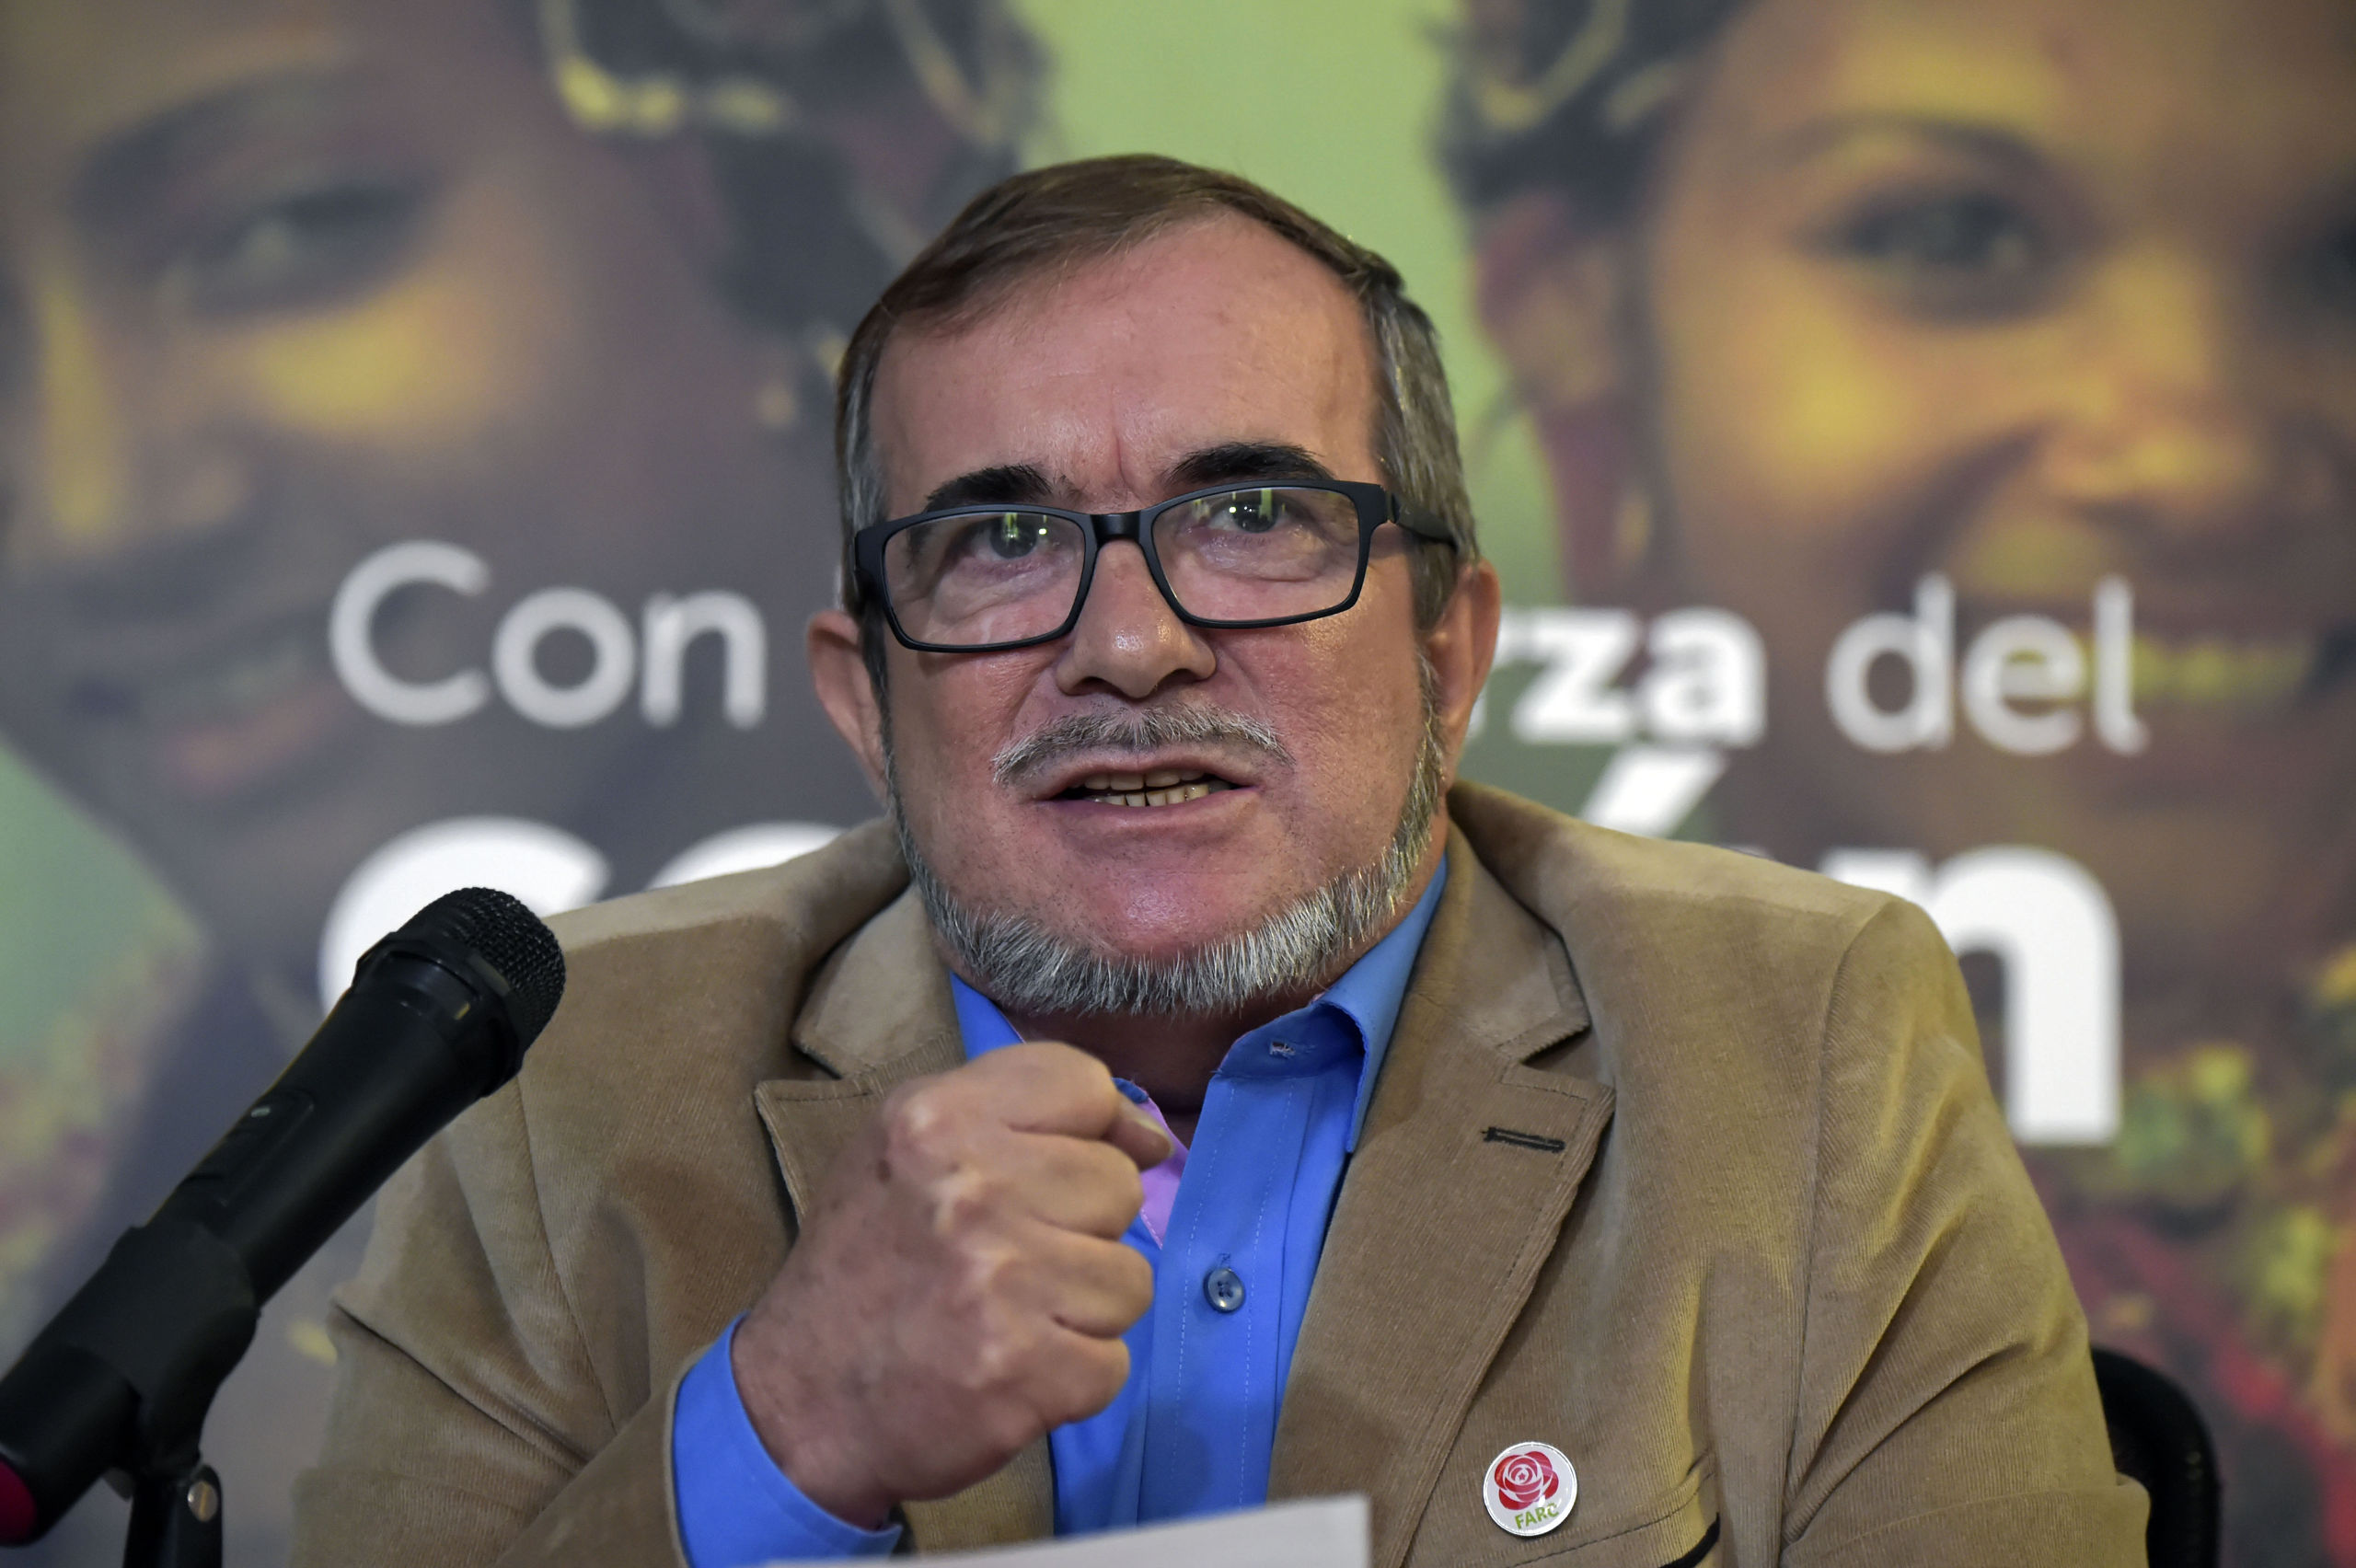 Rodrigo Lodoño Echeverri, bekend als Timochenko, was de presidentskandidaat voor de FARC. Tot hij zich terugtrok.